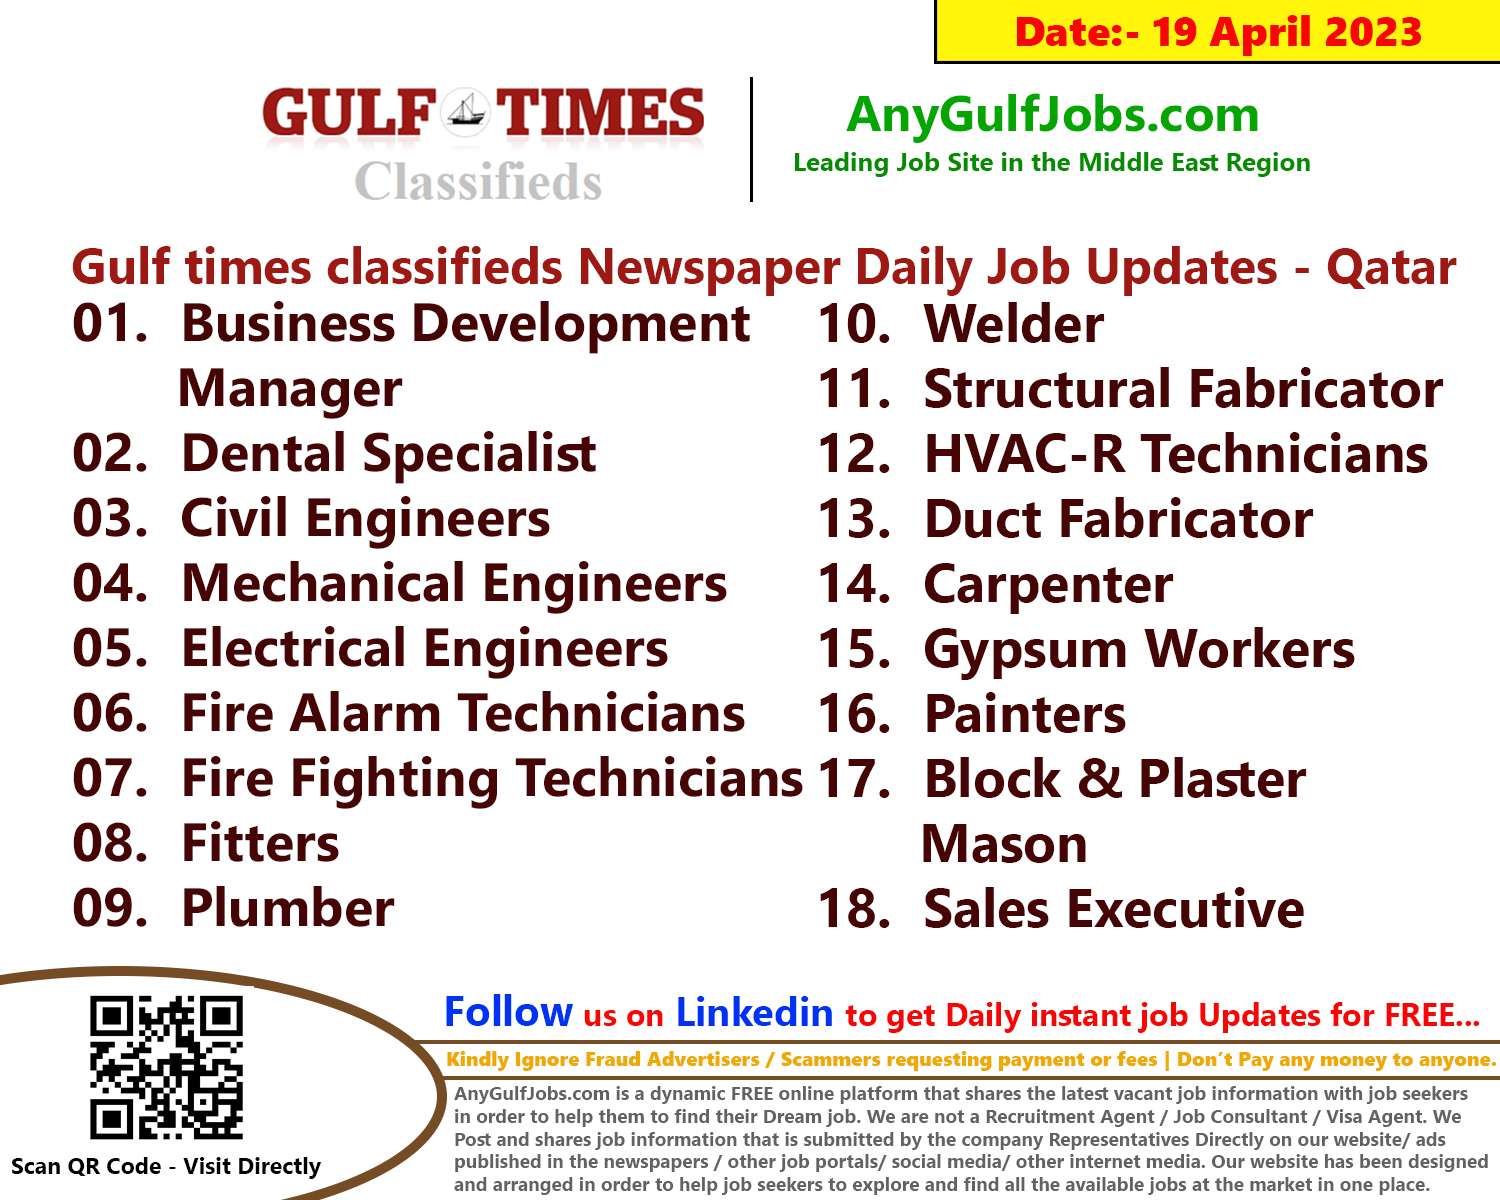 Gulf times classifieds Job Vacancies Qatar - 19 April 2023